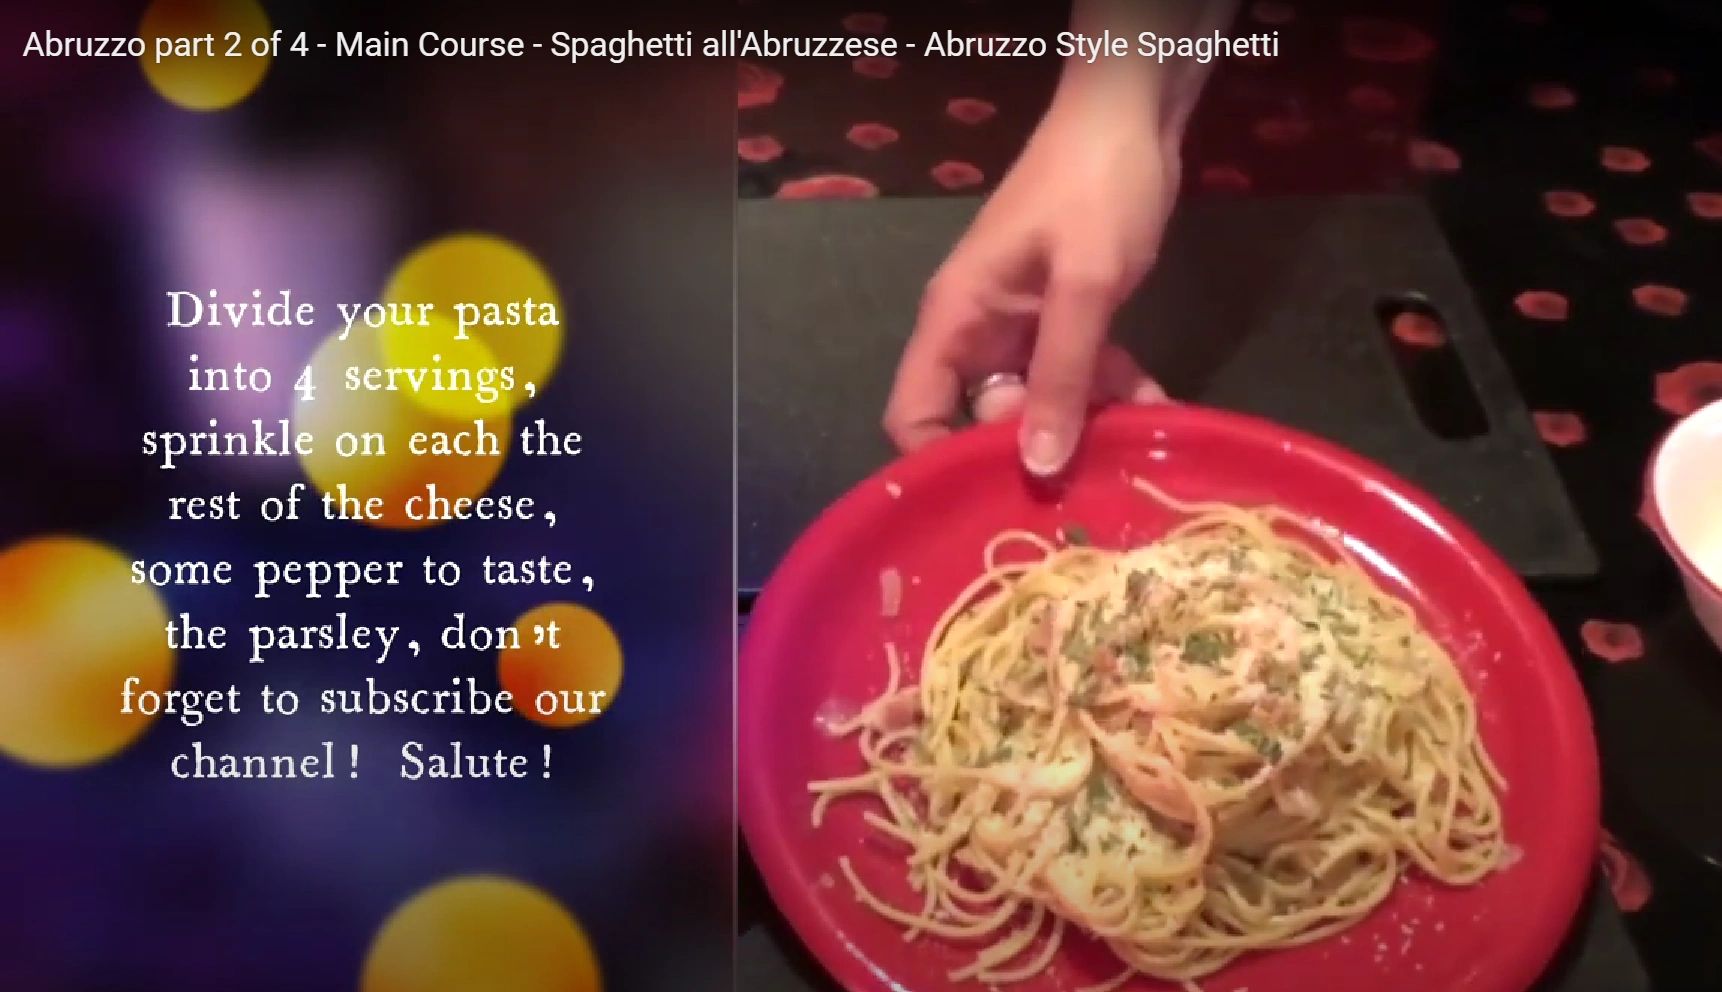 Abruzzo part 2 of 4 - Main Course - Spaghetti all'Abruzzese